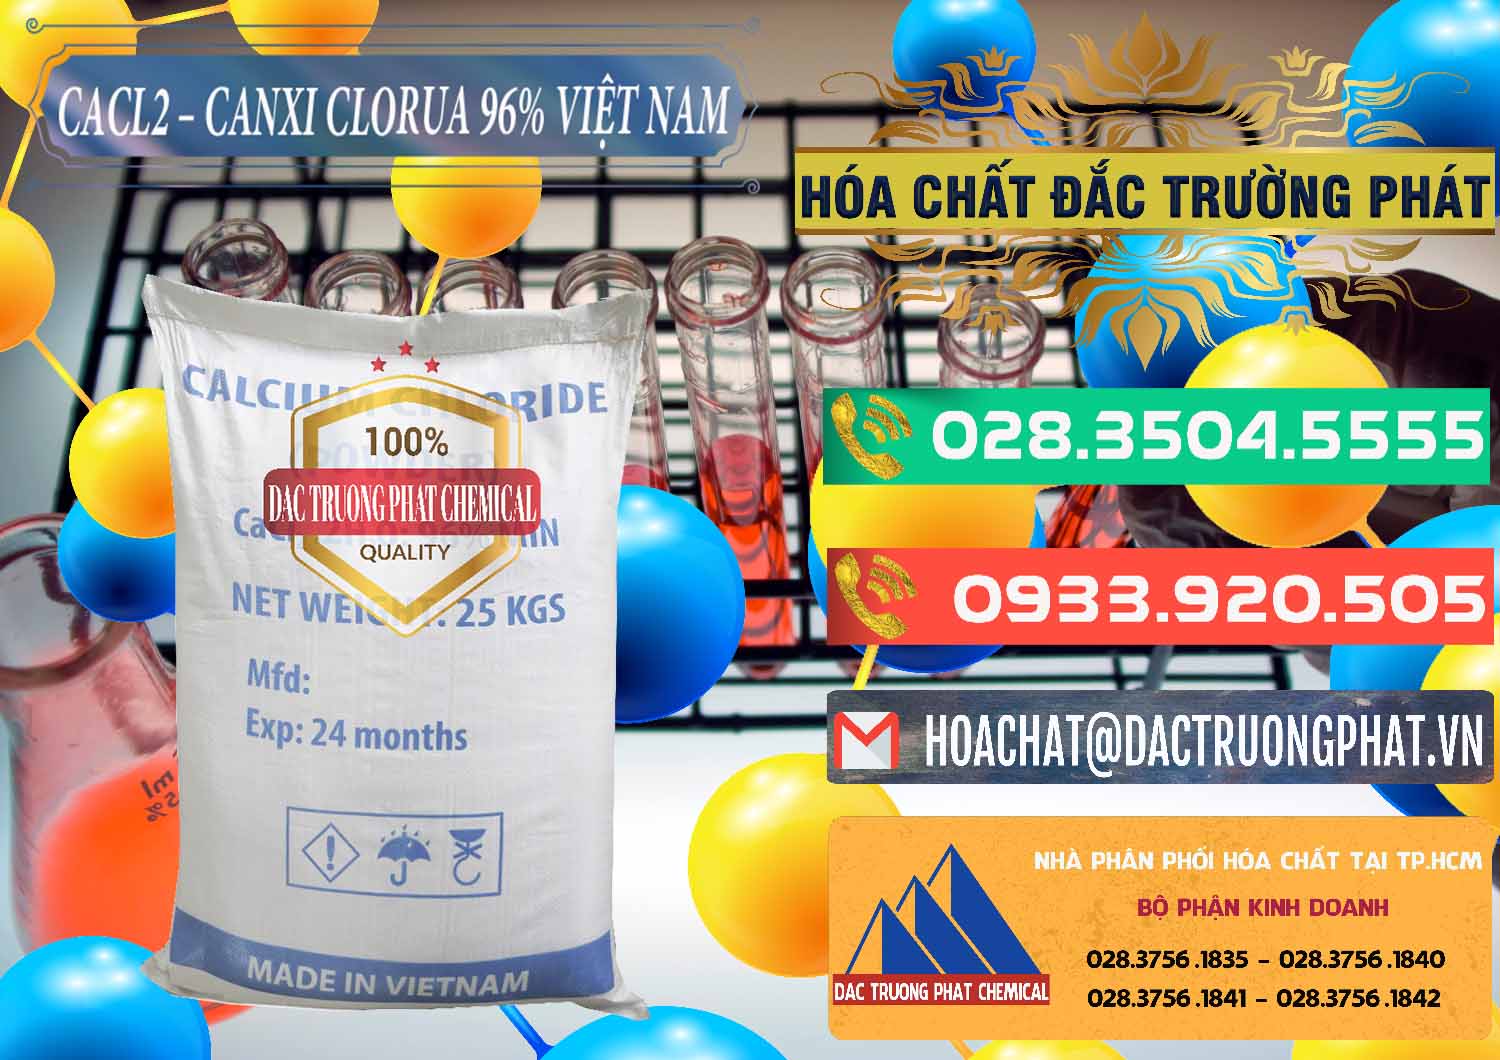 Đơn vị chuyên phân phối - cung ứng CaCl2 – Canxi Clorua 96% Việt Nam - 0236 - Phân phối và kinh doanh hóa chất tại TP.HCM - congtyhoachat.com.vn